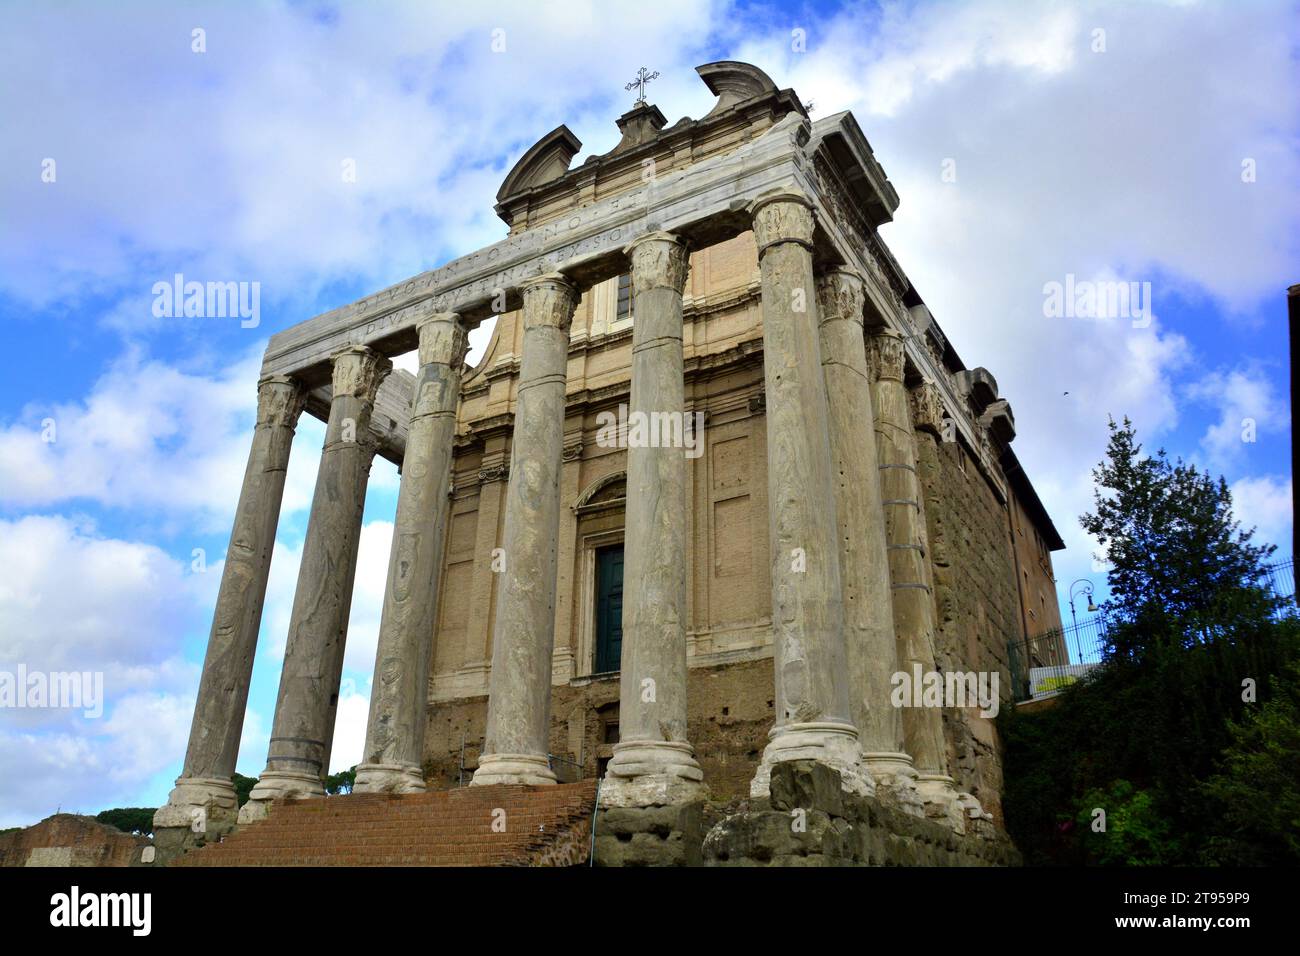 Le temple d'Antonin Pie et Faustine à Rome Italie. Banque D'Images